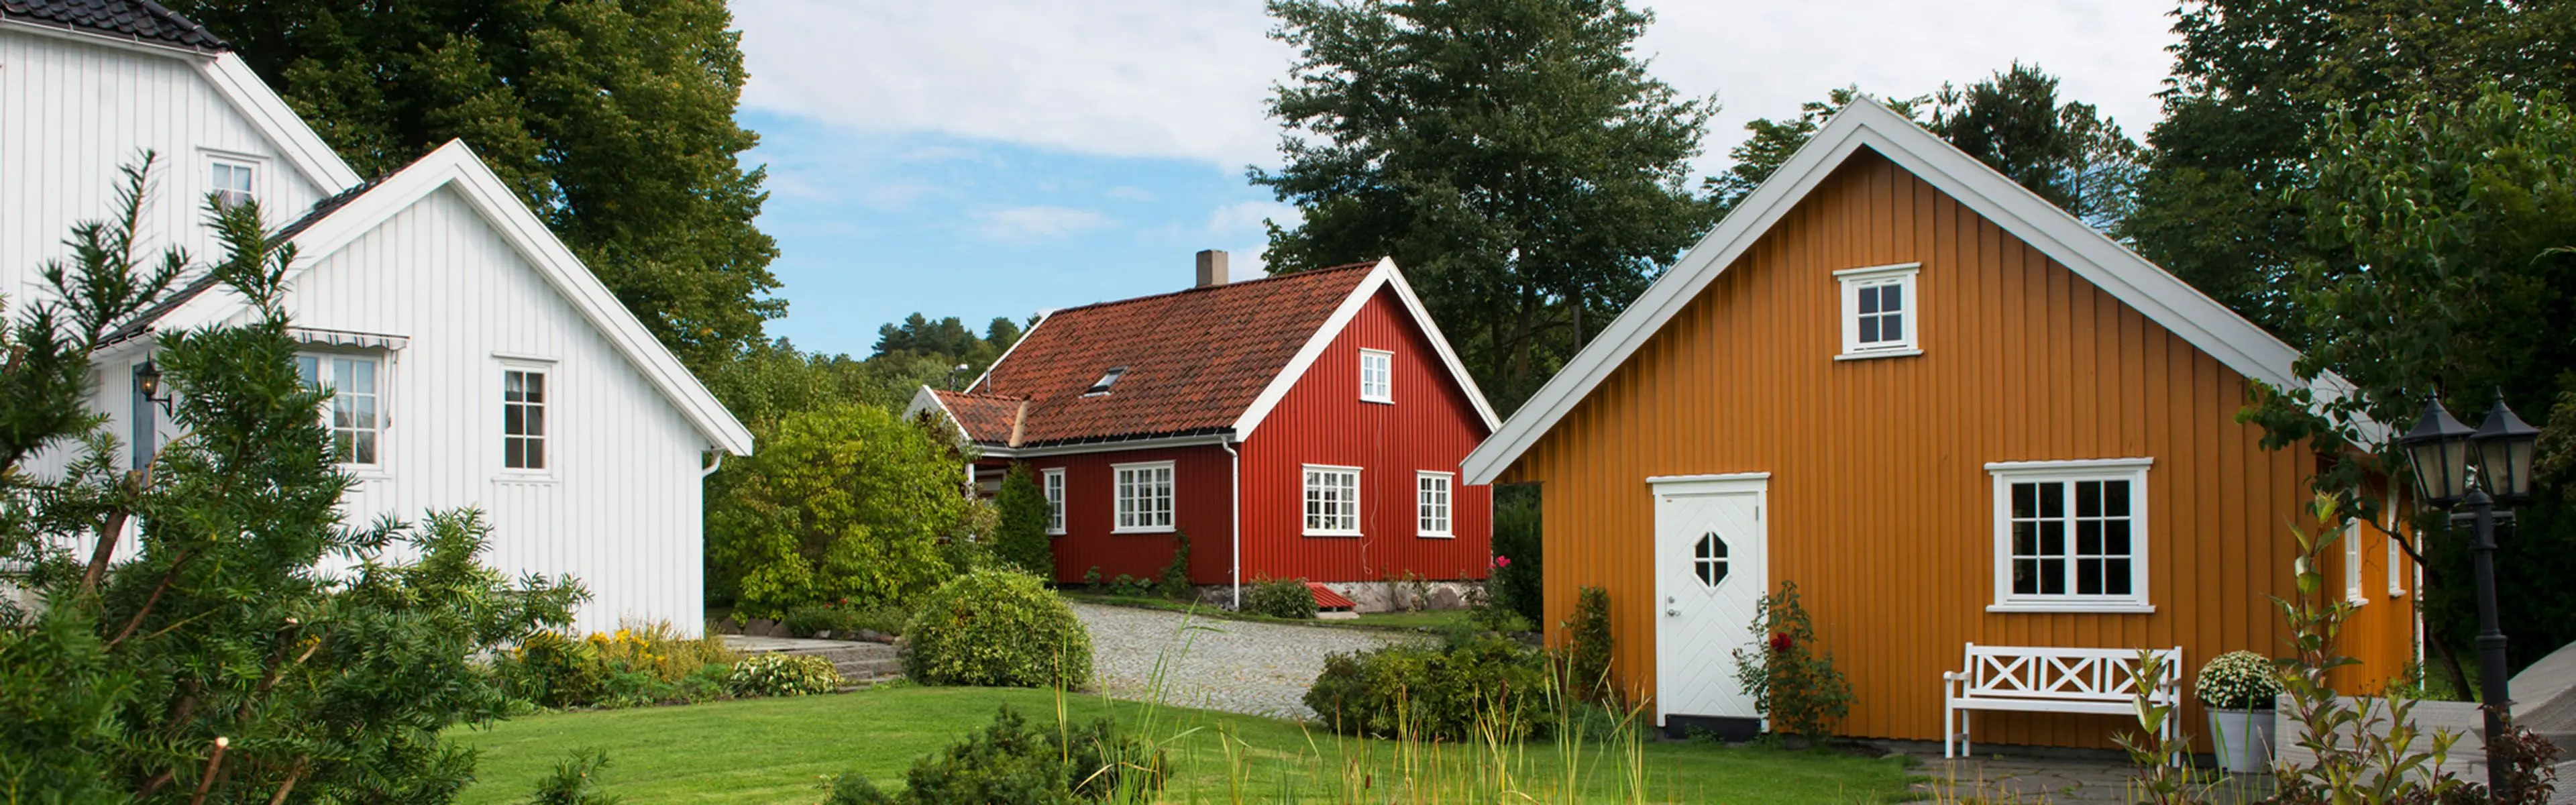 idyllisk gårdsbruk med gule og røde gårdsbygninger